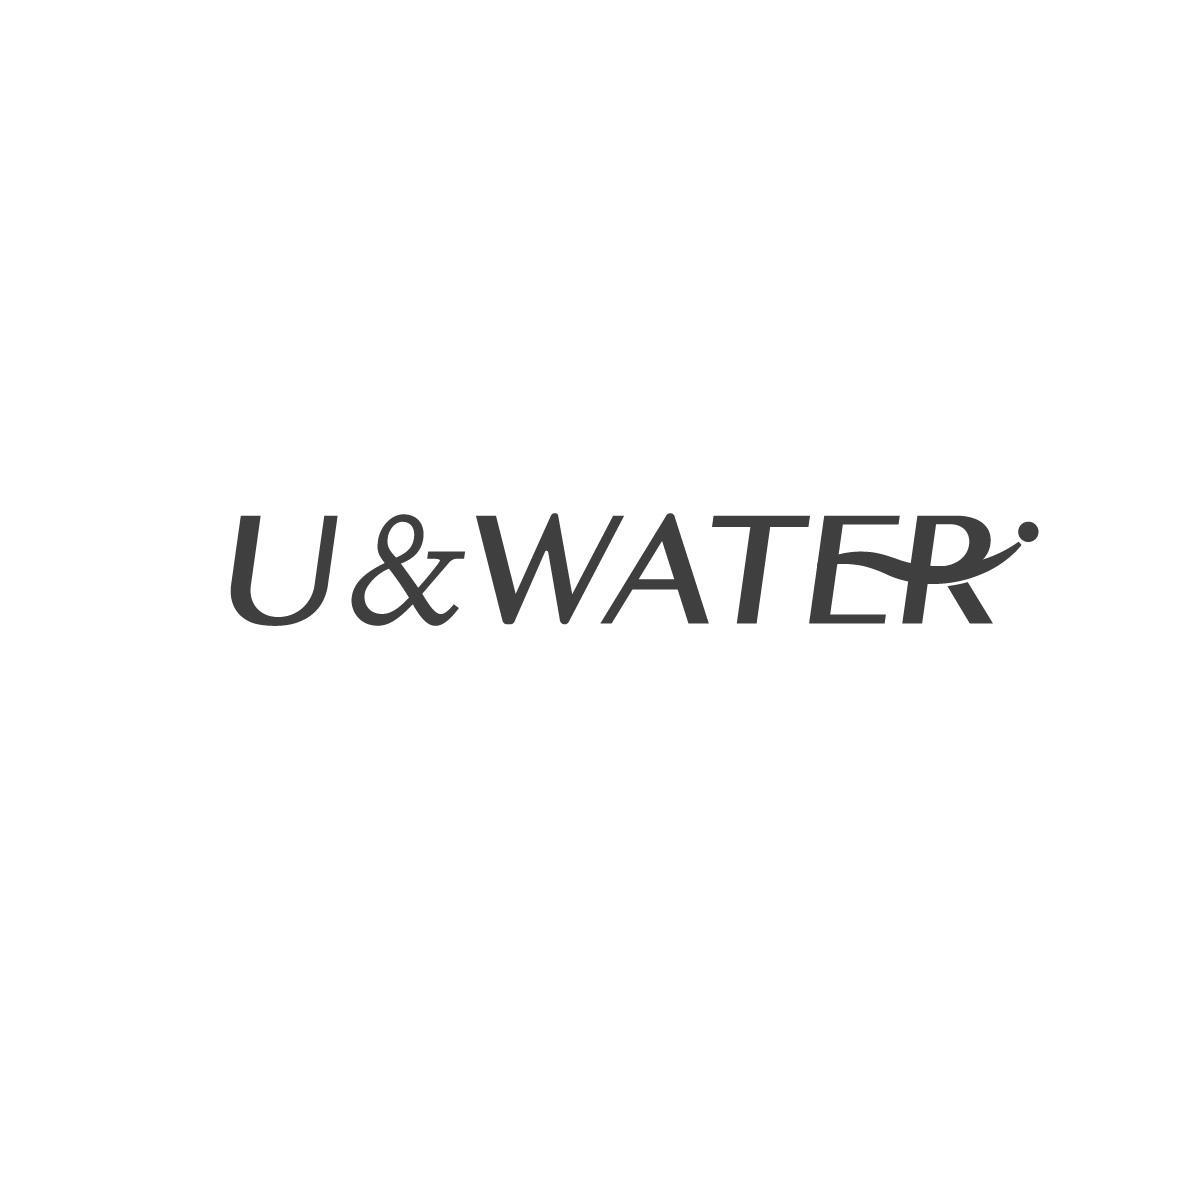 U&WATER